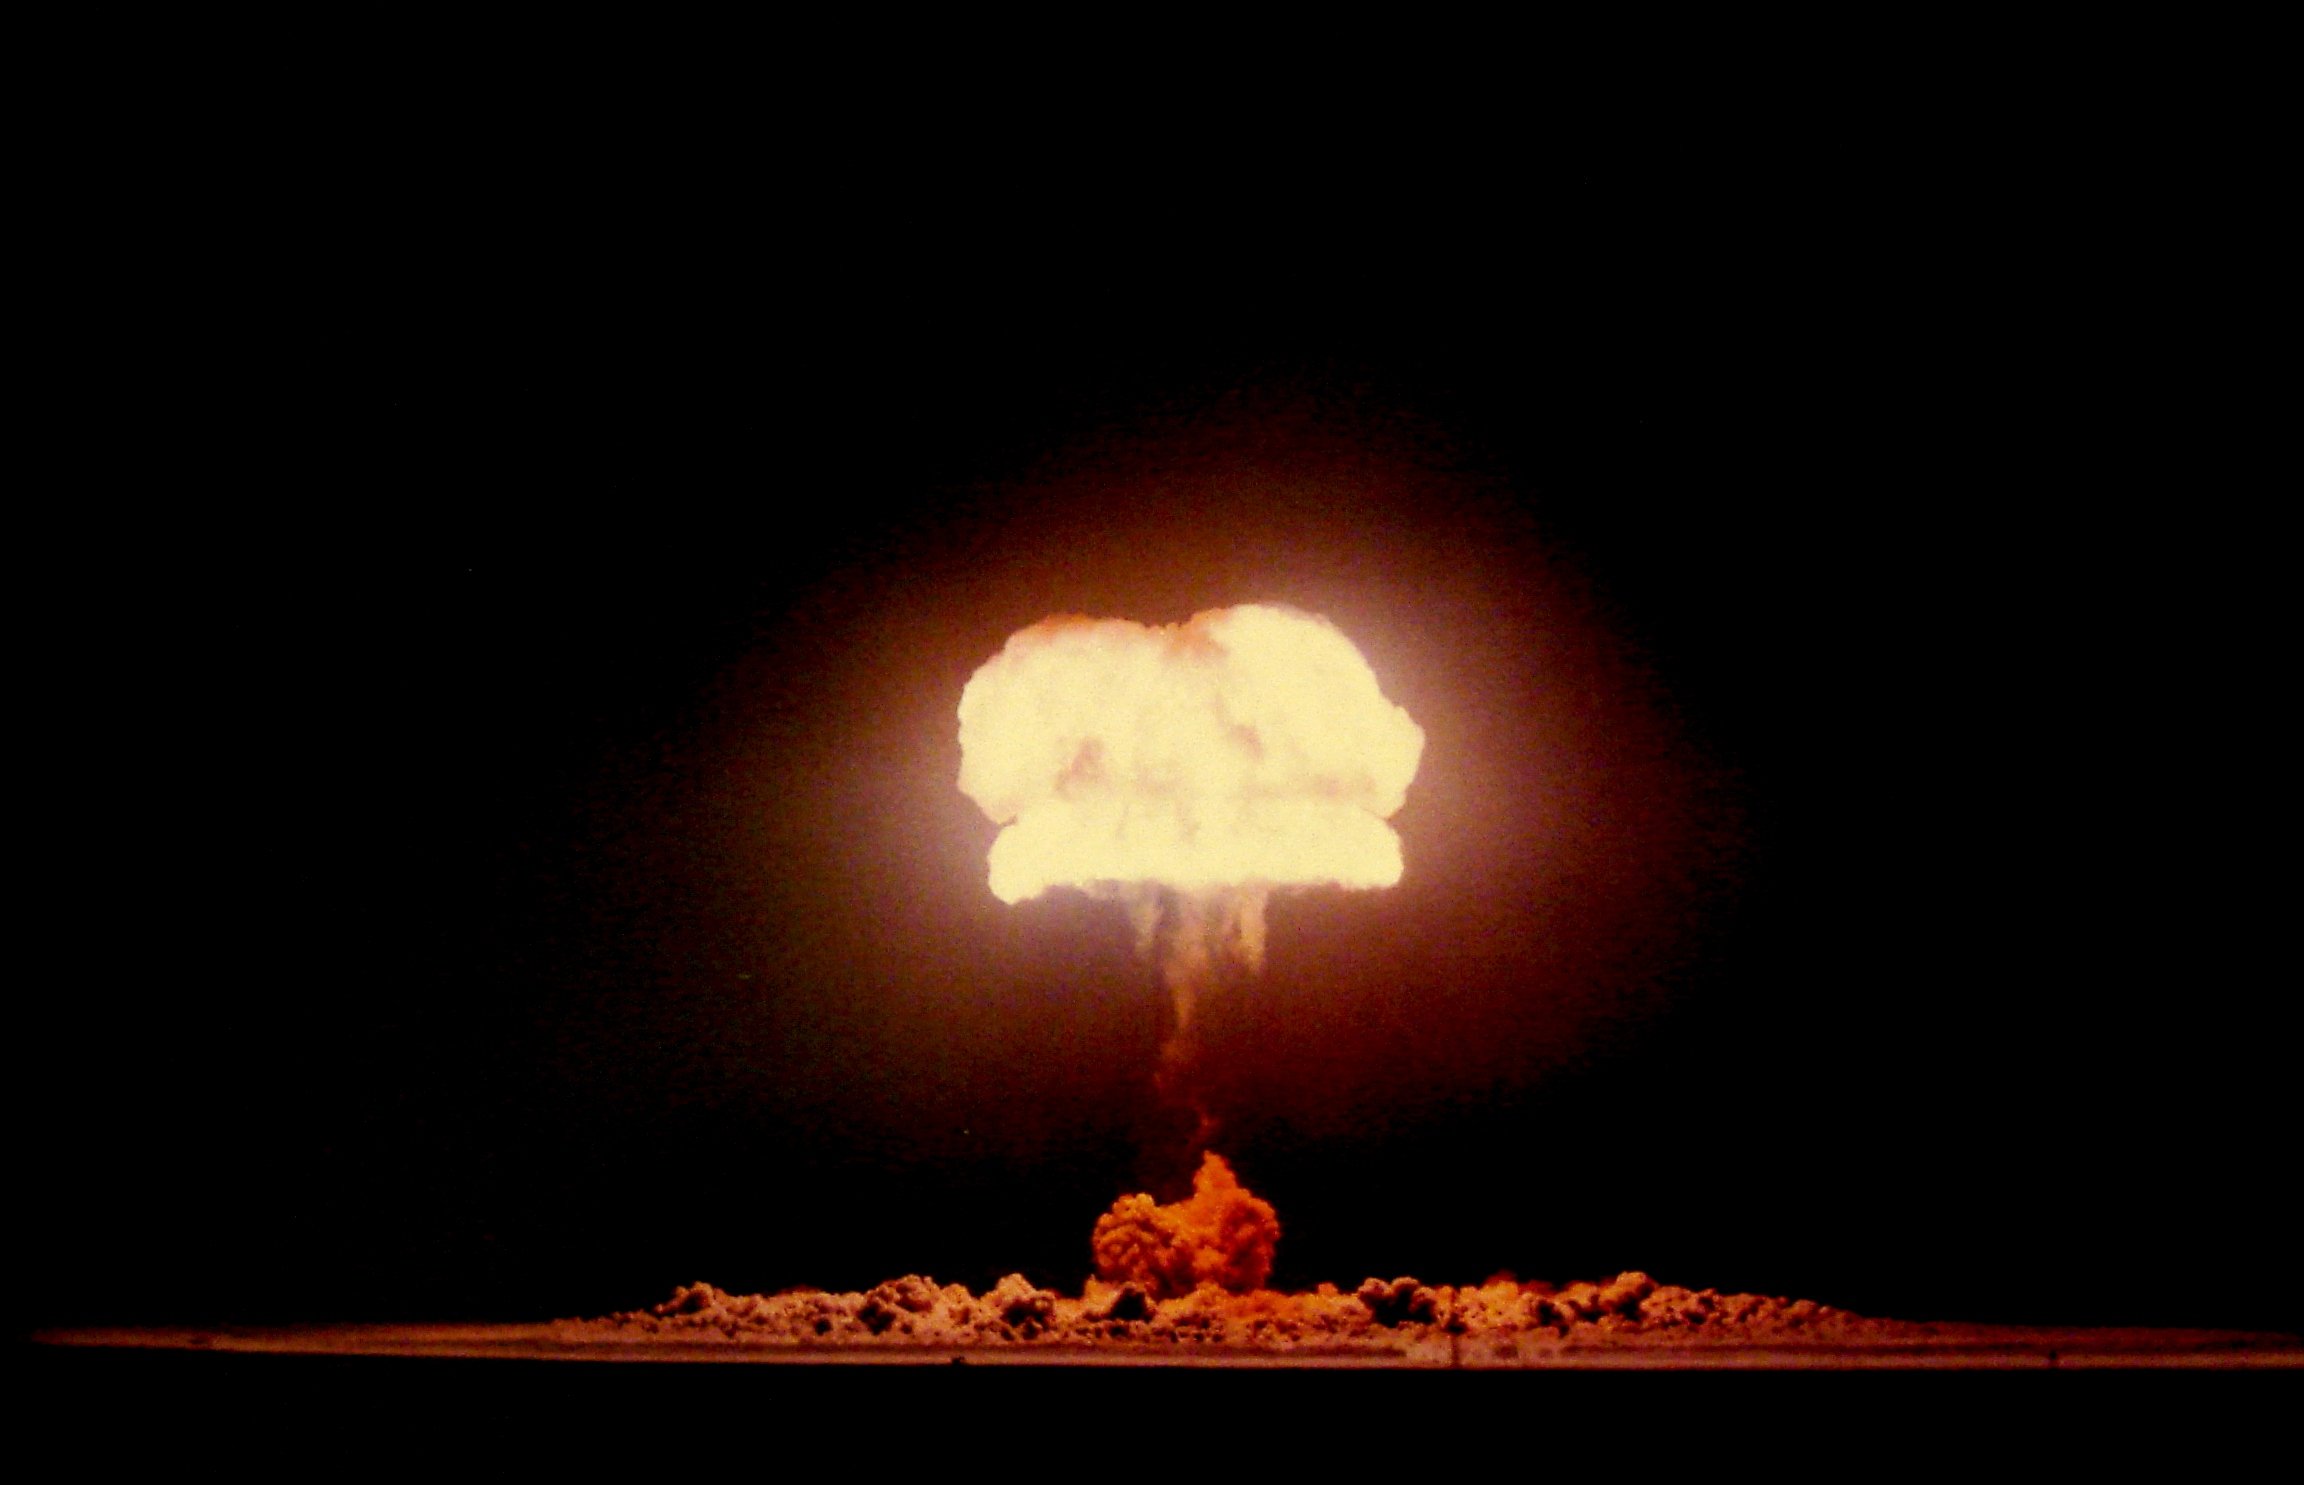 Ядерный взрыв в воздухе. Ядерное оружие световое излучение. Световое излучение ядерного взрыва. Ядерный взрыв 40мт. Высотный взрыв ядерного оружия.